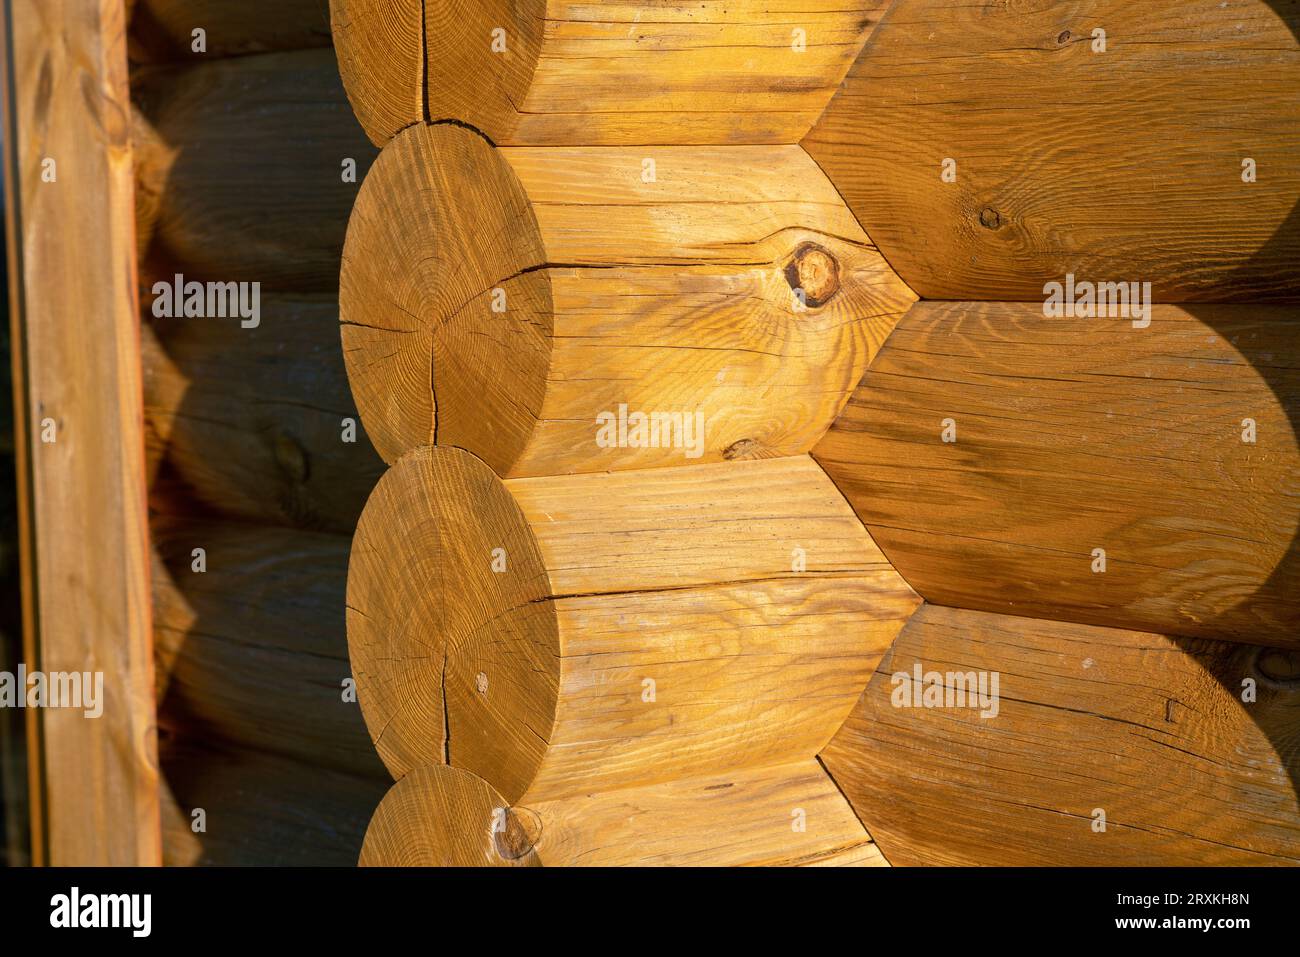 Holzgebäude mit Baudetails und Fassade mit freiliegenden Holzbalken. Ineinander greifende Balkenstruktur. Architektur, Design. Stockfoto